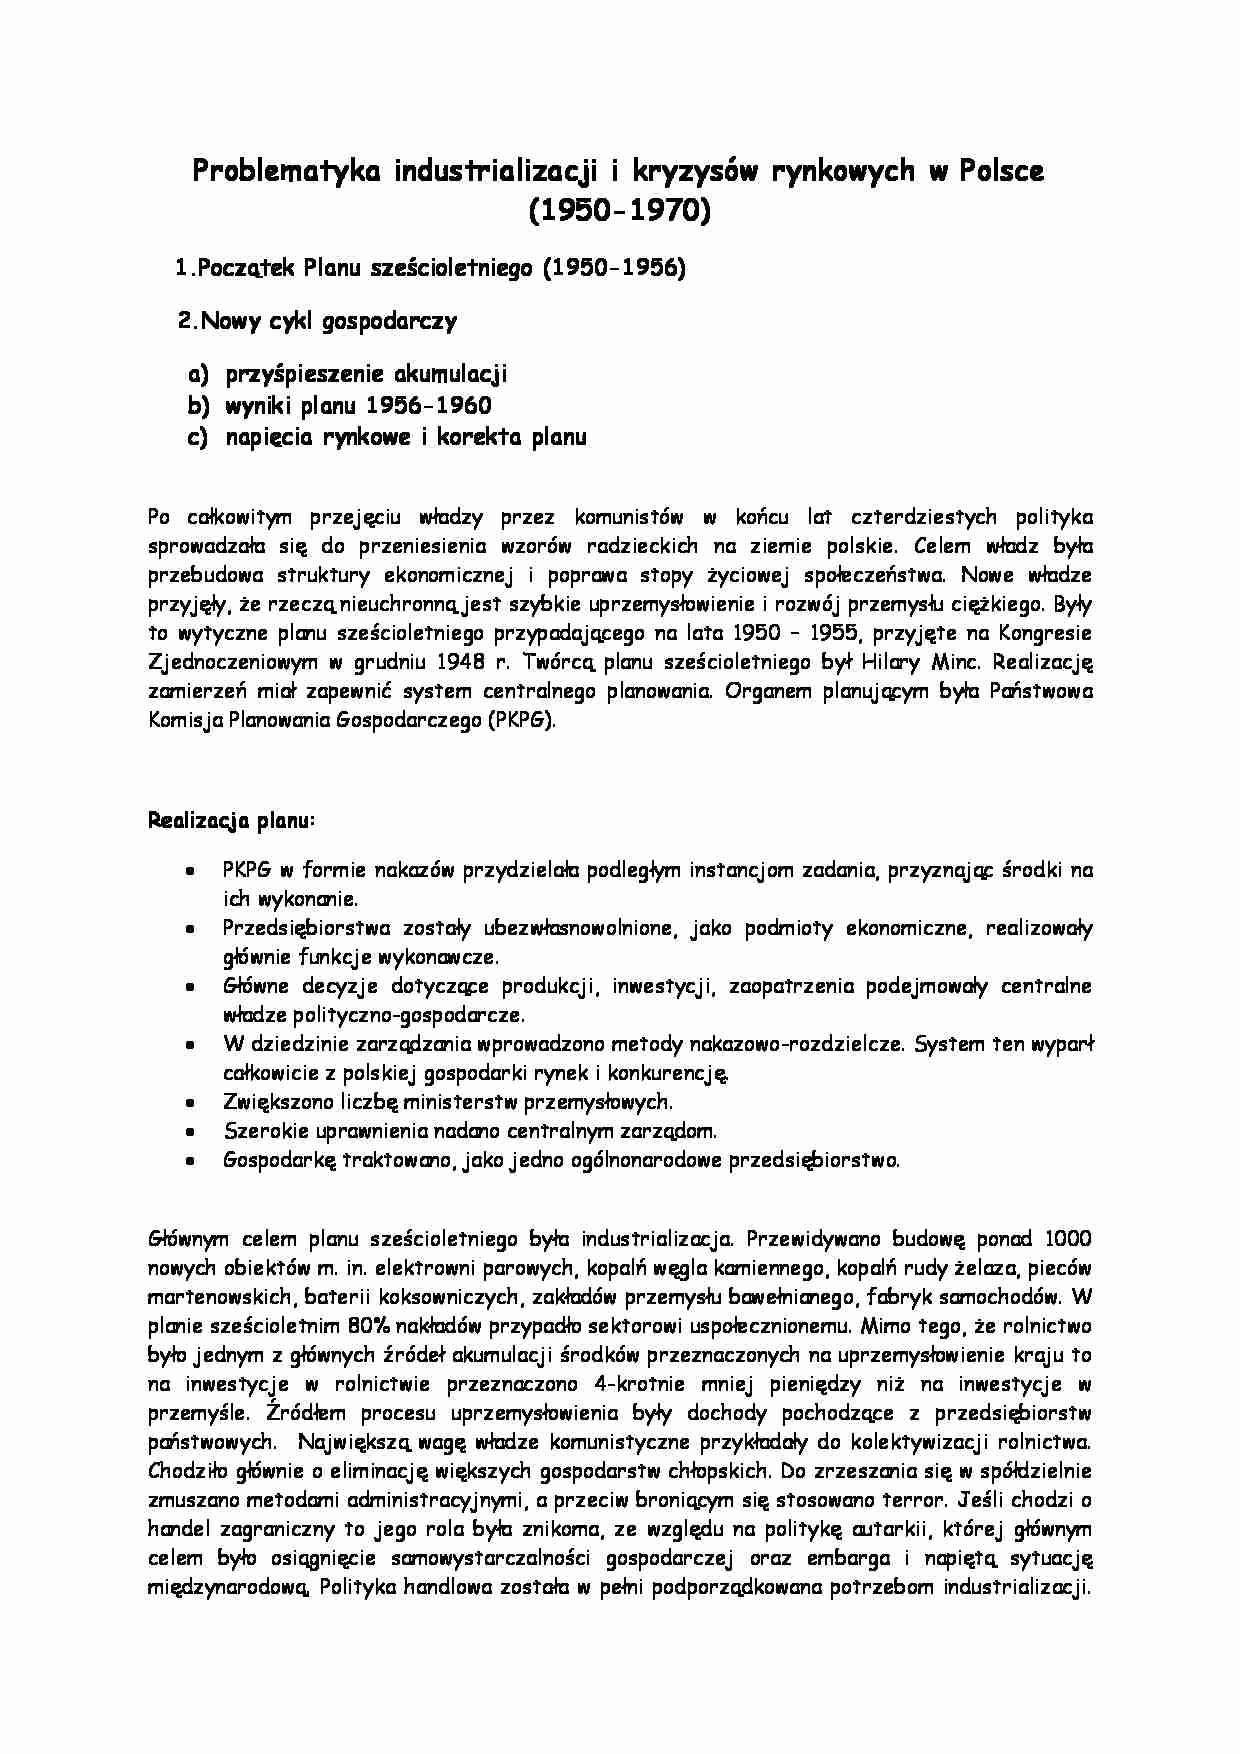 Problematyka industrializacji i kryzysów rynkowych w Polsce - strona 1